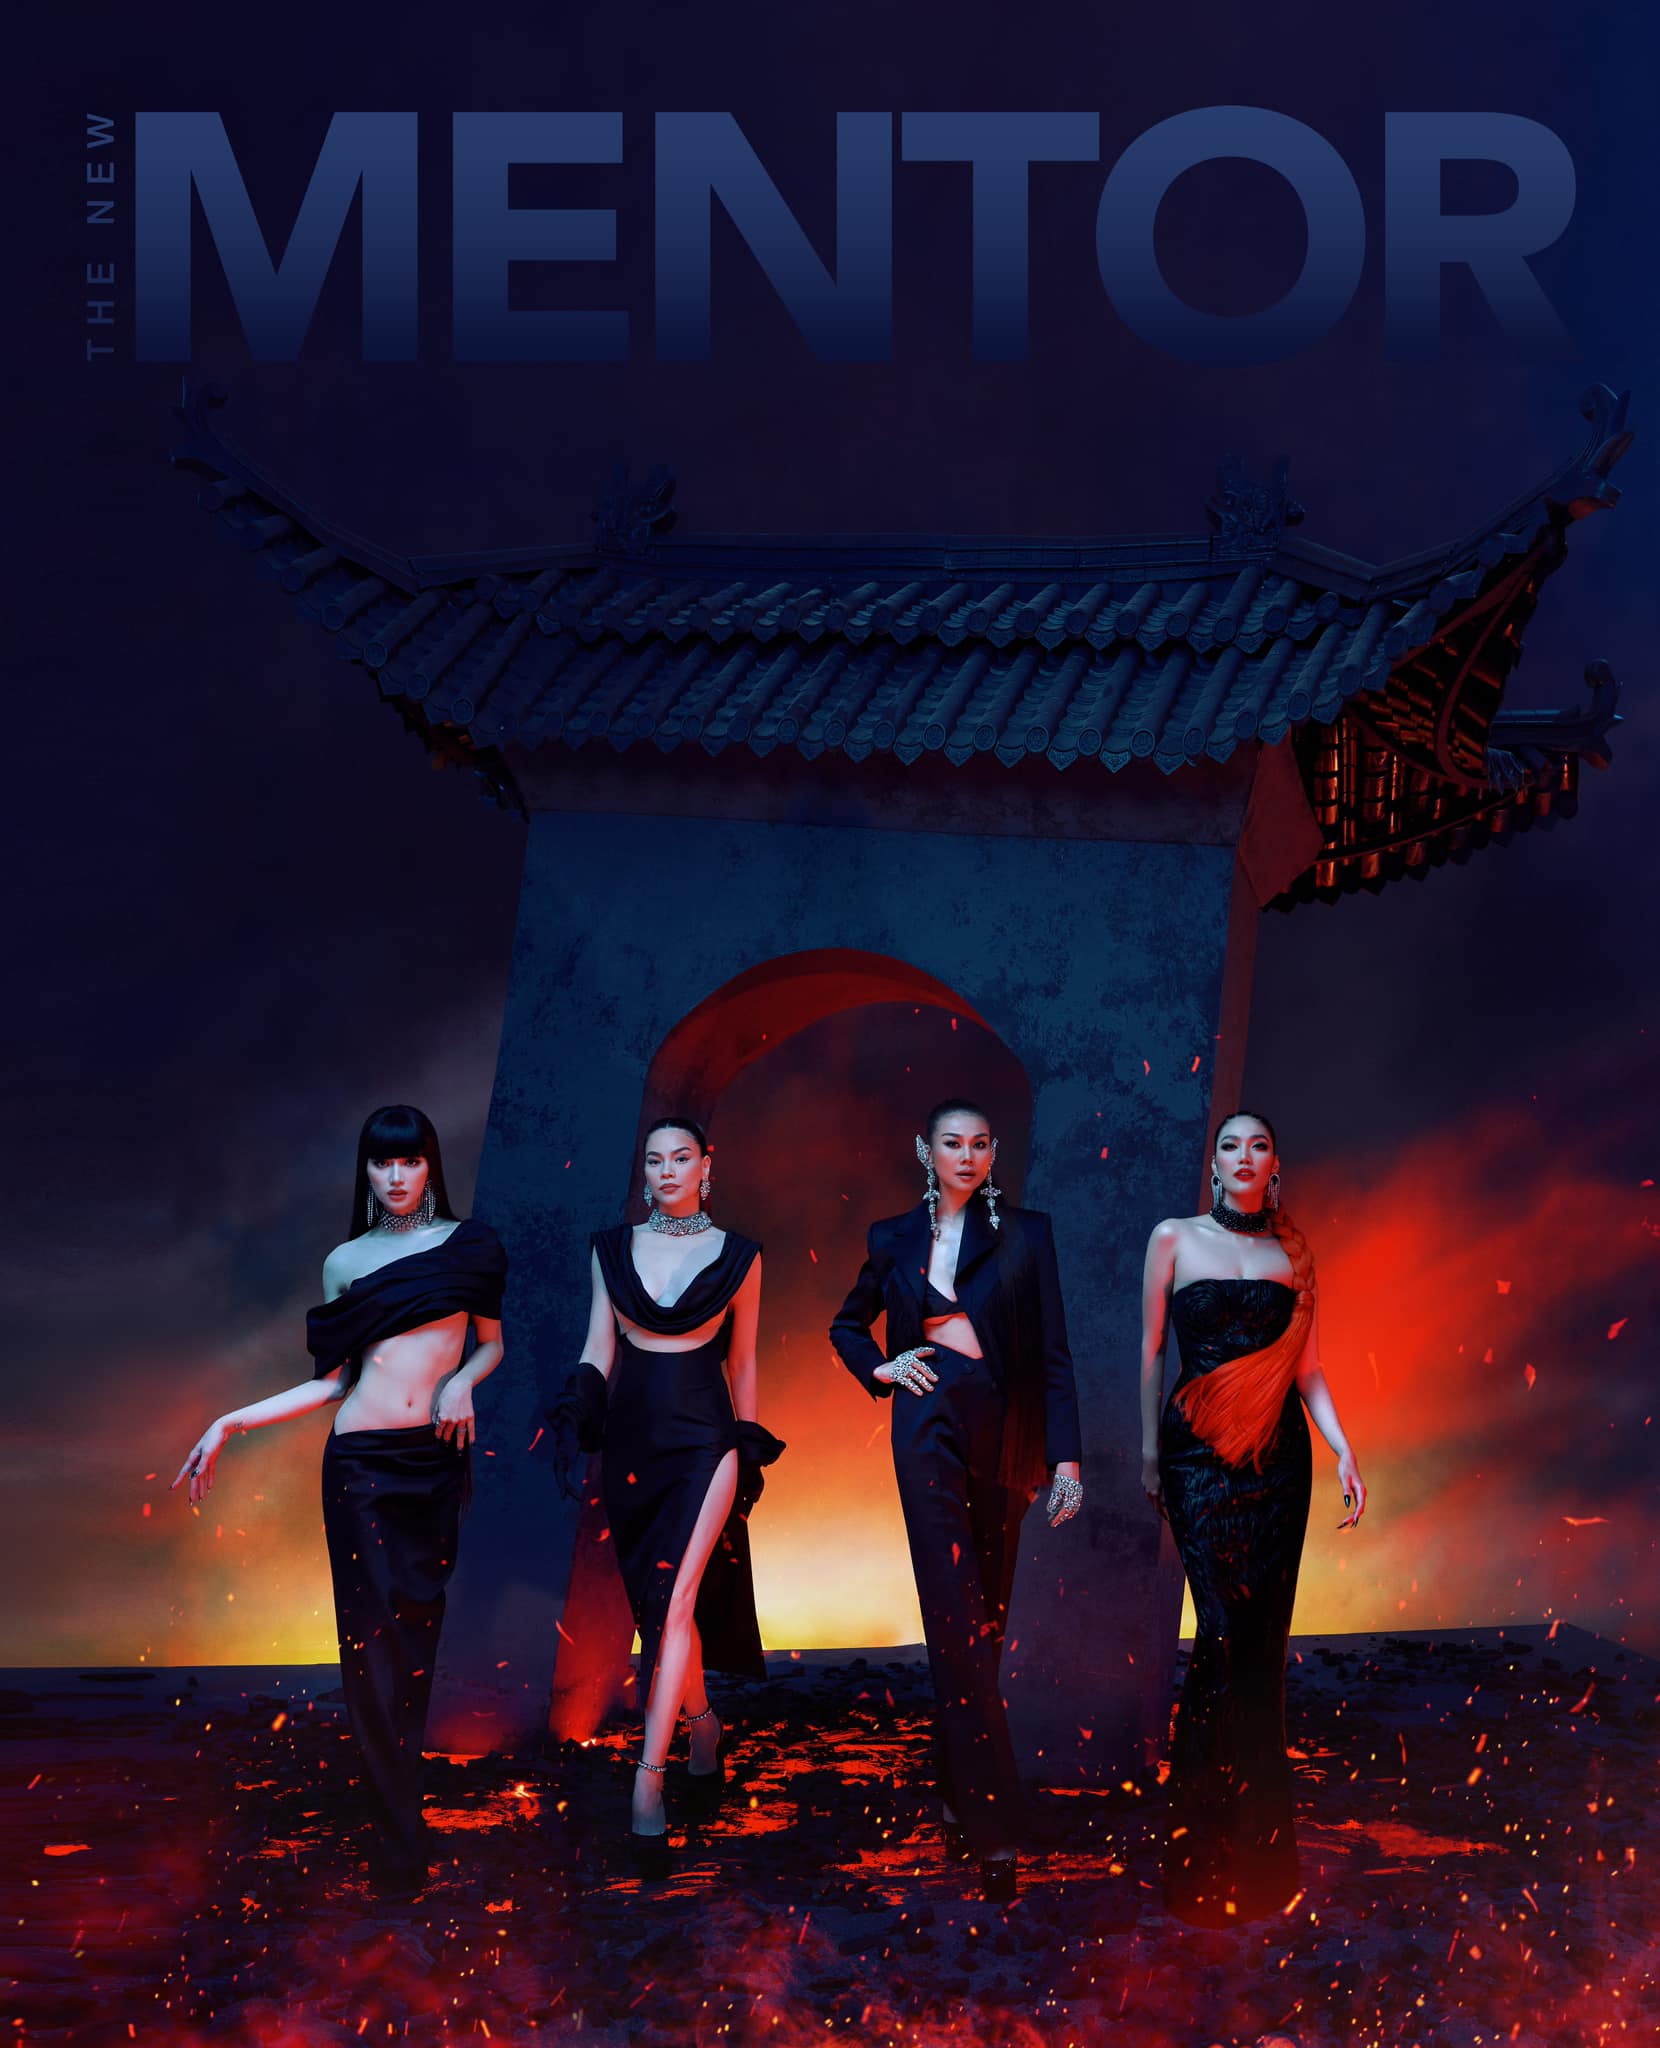 The New Mentor 2023 công bố cái tên mới, Lan Khuê sẽ cạnh tranh cùng Hà Hồ, Thanh Hằng, Hương Giang - ảnh 1